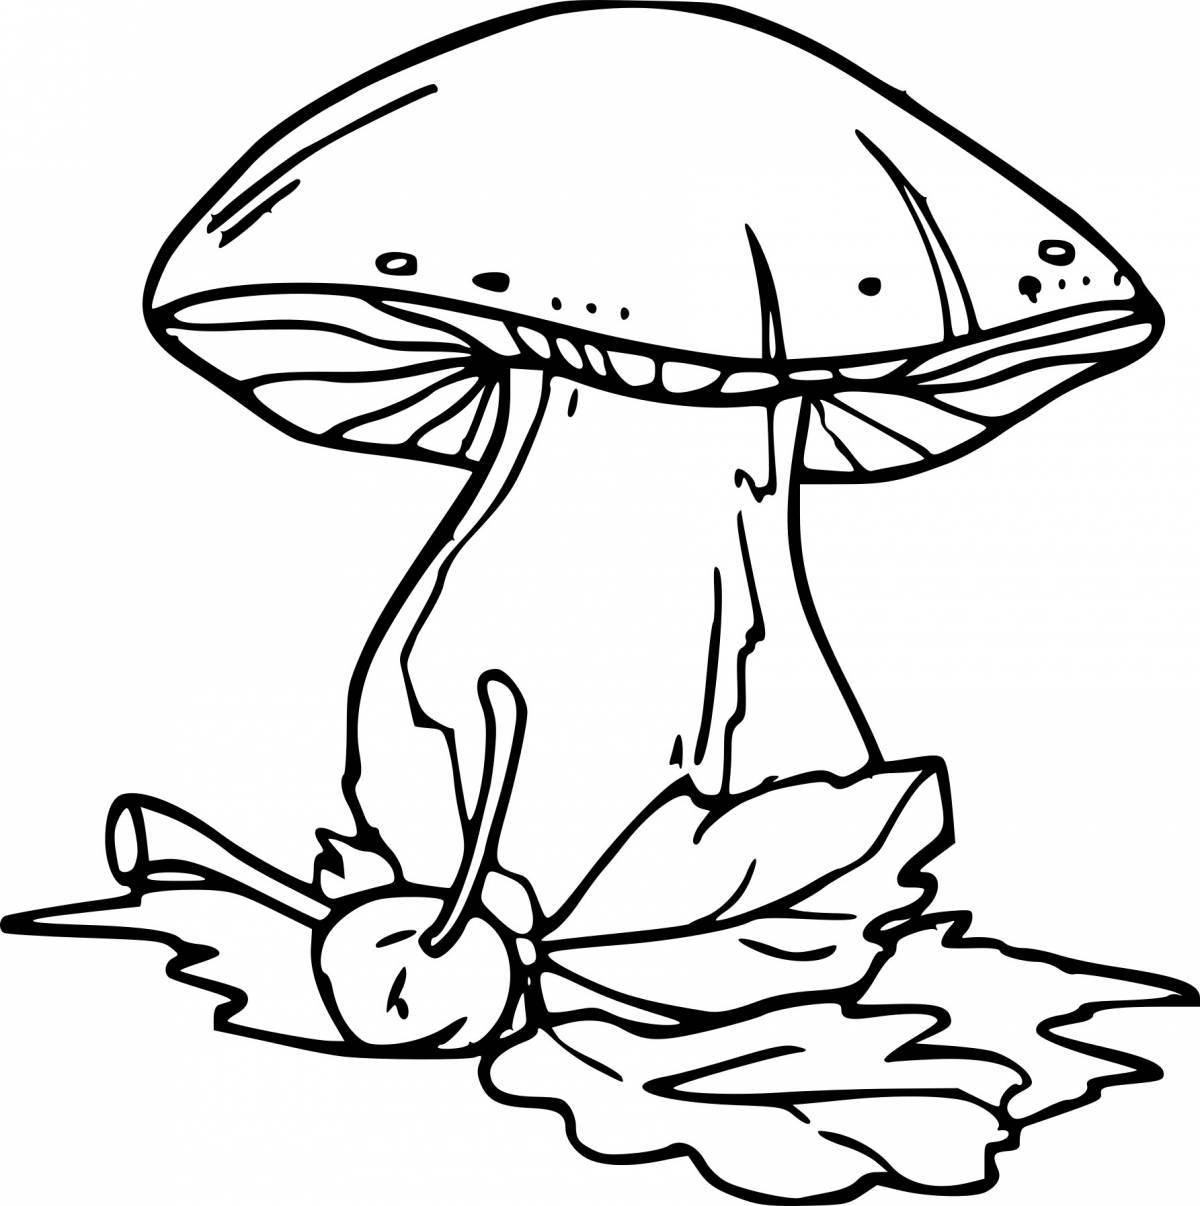 Fun coloring mushrooms for kids